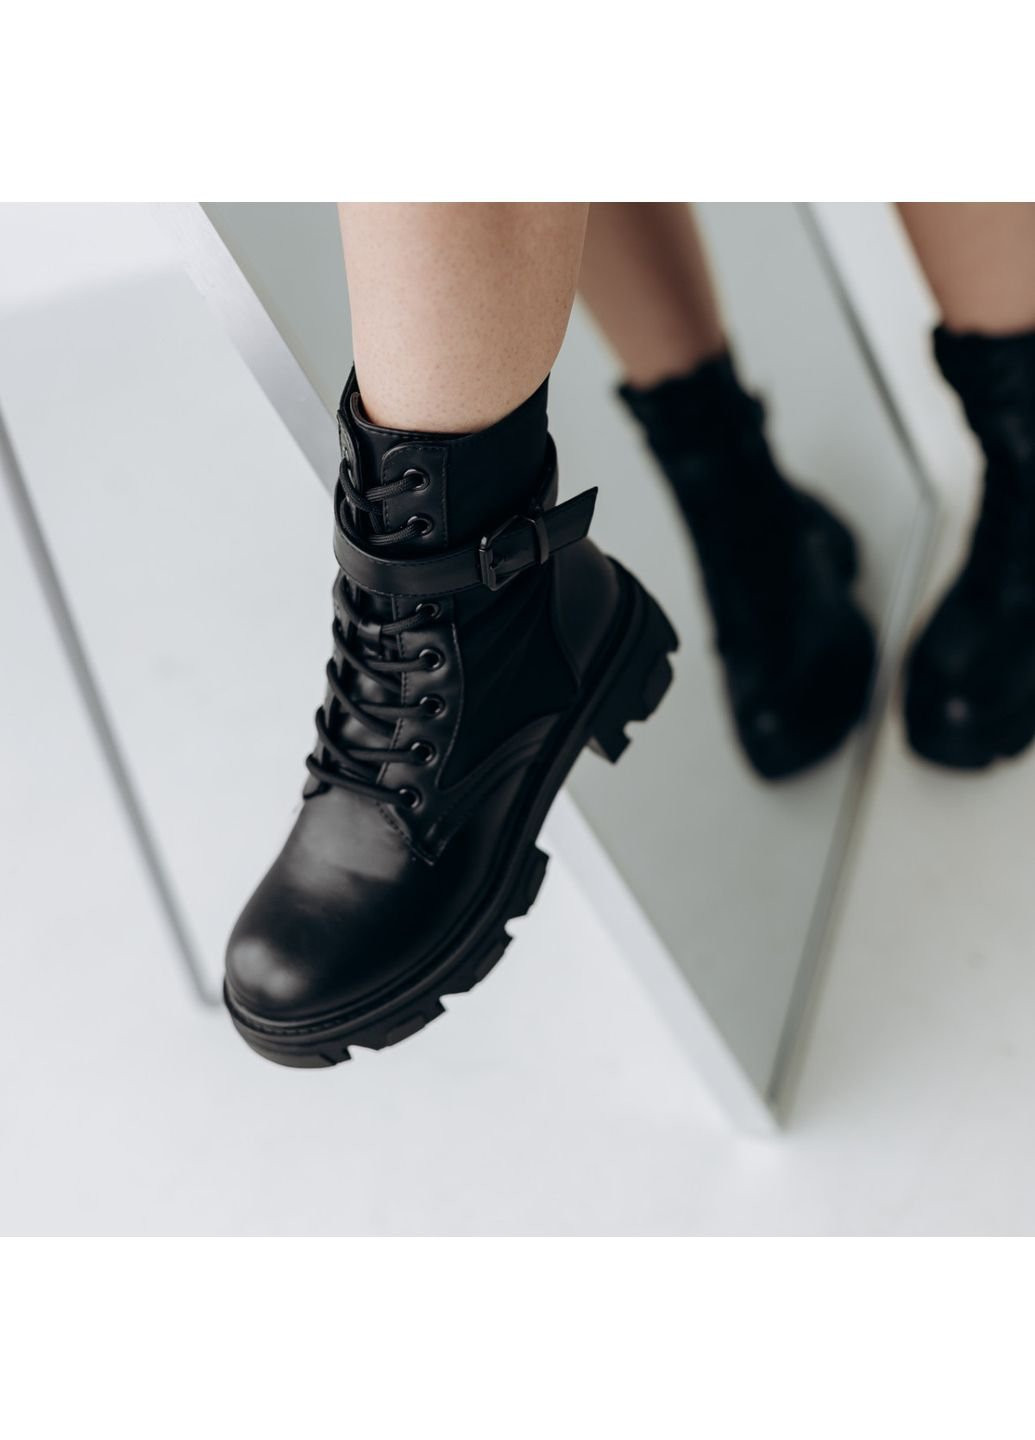 Осенние ботинки женские aeris 3289 40 25,5 см черный Fashion из искусственной кожи